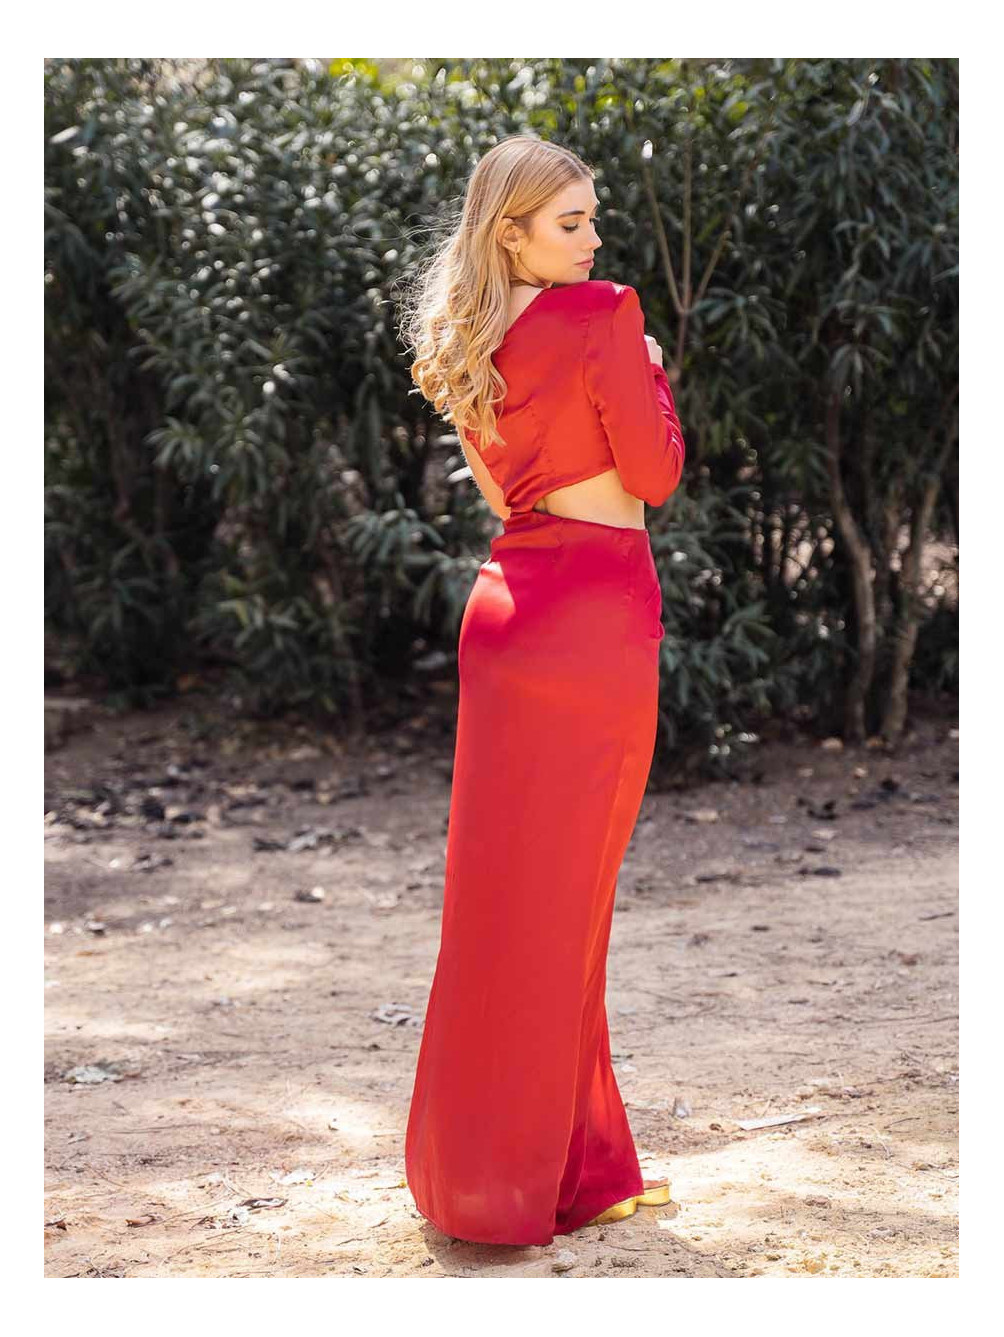 Vestido Bolonia, Vestido de Invitada, Vestido Rojo de Invitada, Mariquita Trasquilá